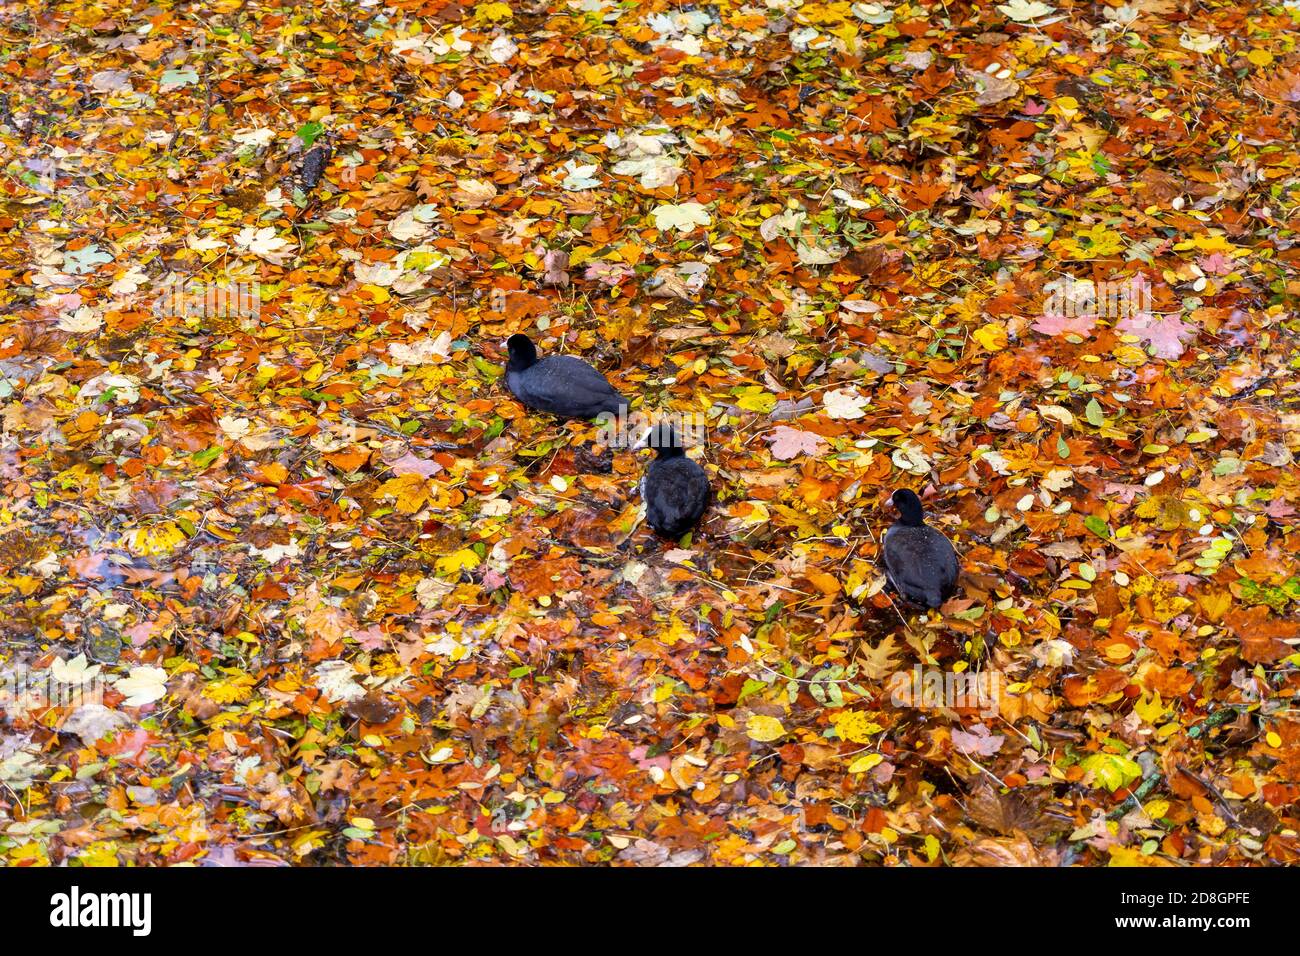 Bunte Blätter, Laub, im Herbst, schwimmen auf der Oberfläche eines Teichs, Regenwetter, Blässhühner schwimmen zwischen den Blättern, Stockfoto